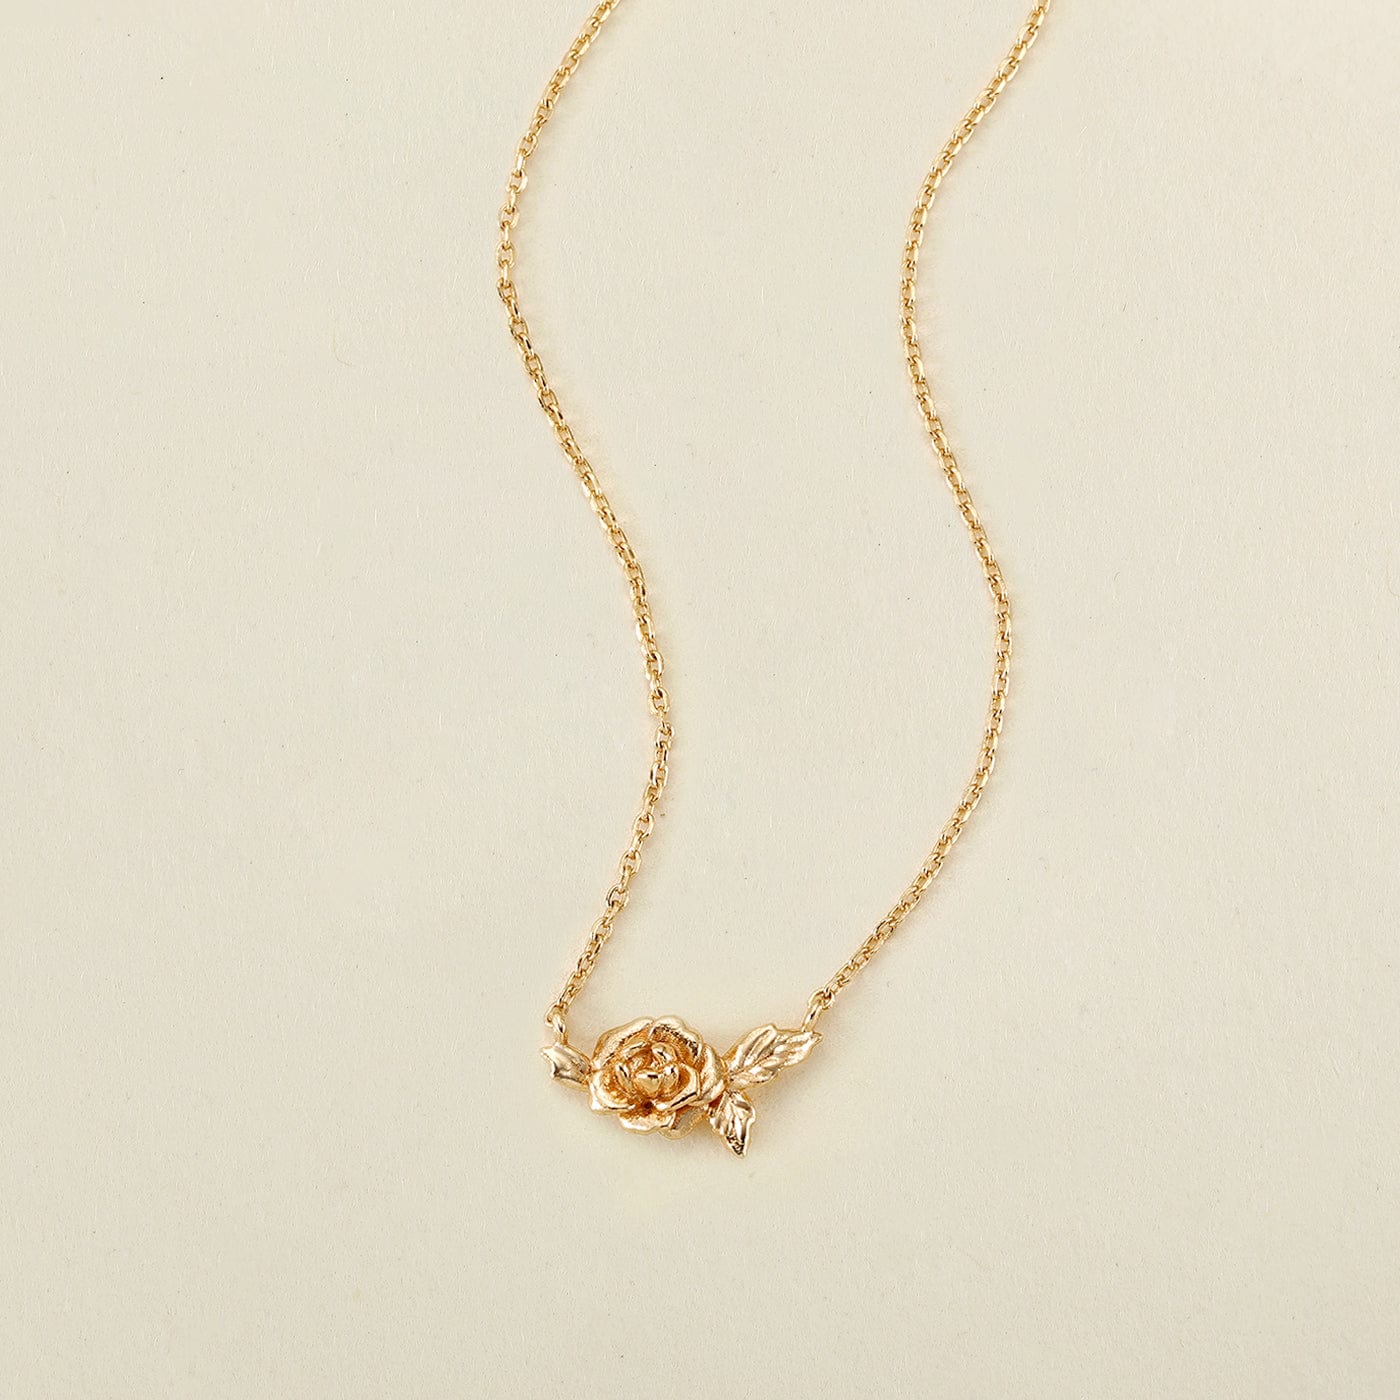 September Everbloom Birth Flower Necklace Gold Vermeil Necklace